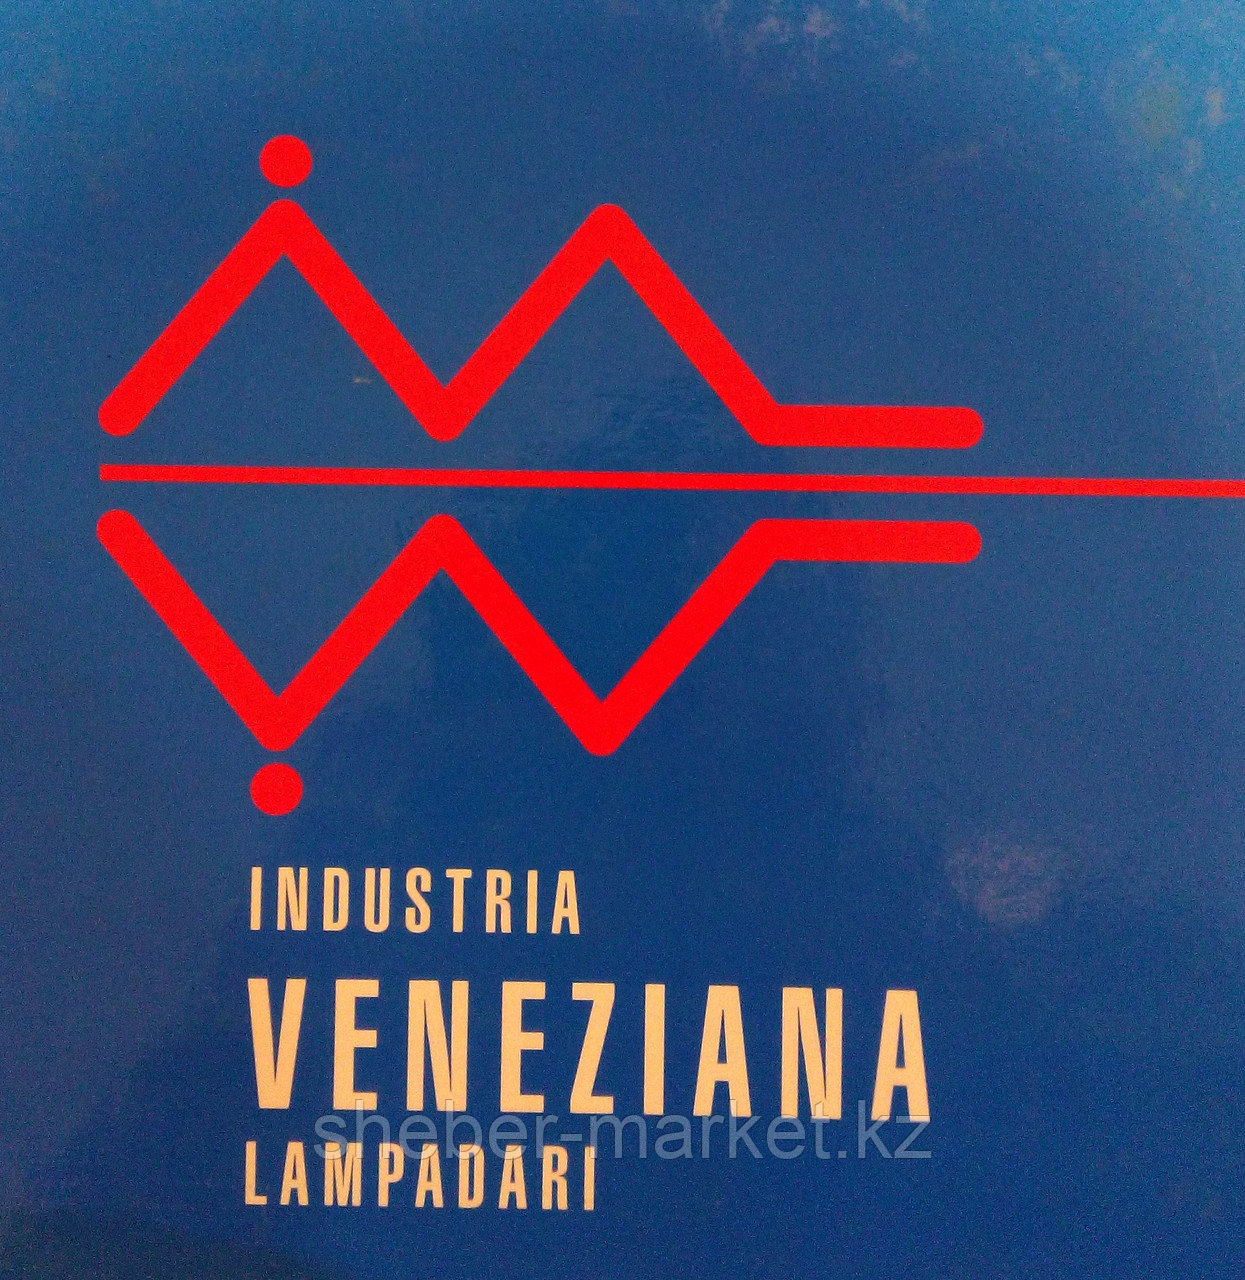 Cветильники потолочные Veneziana Lampadari